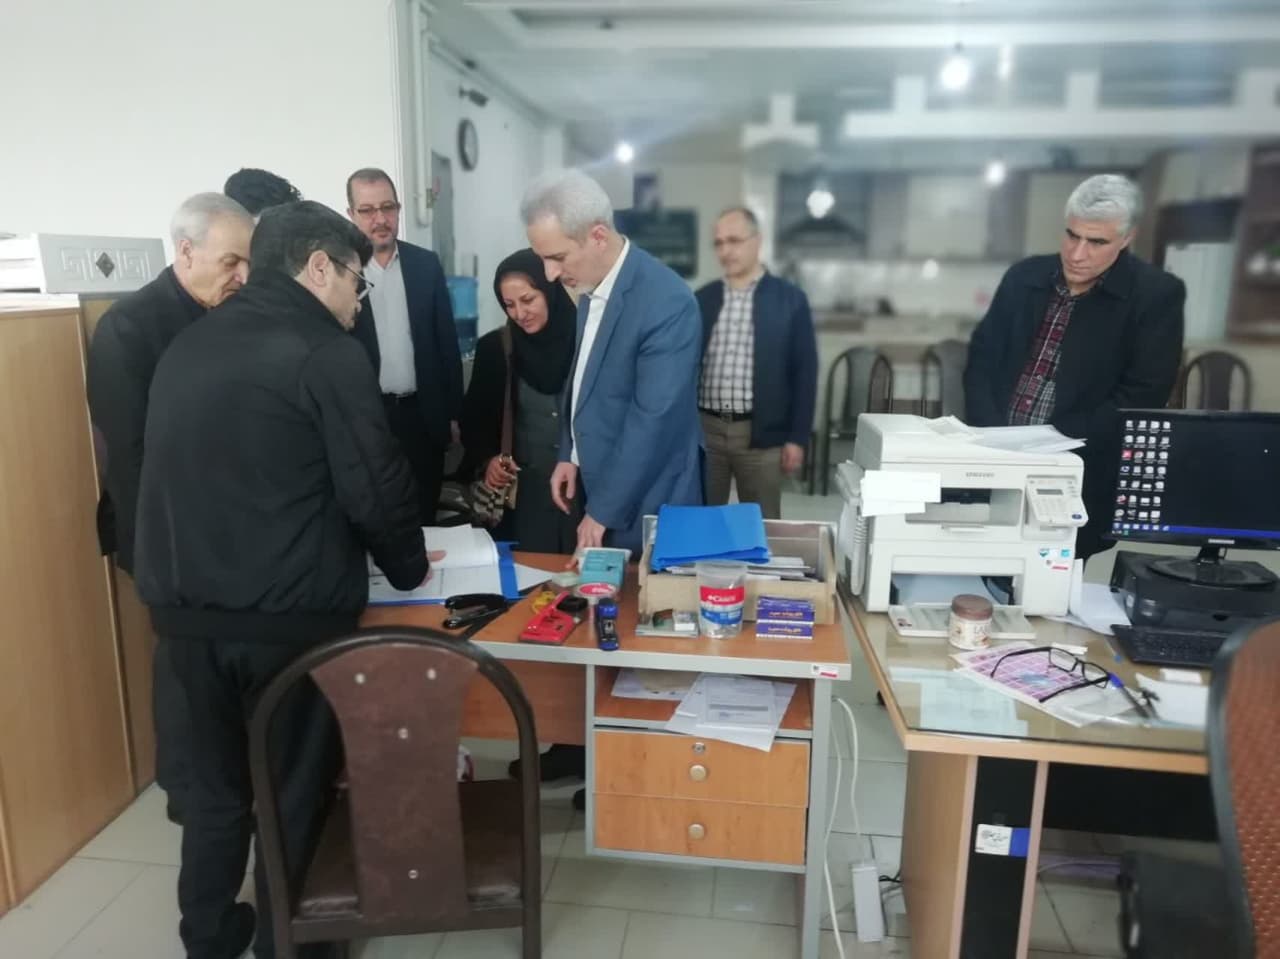 بازدید سرزده نماینده گان ثبت اسناد، دادگستری و دادستانی از اتحادیه املاک زنجان